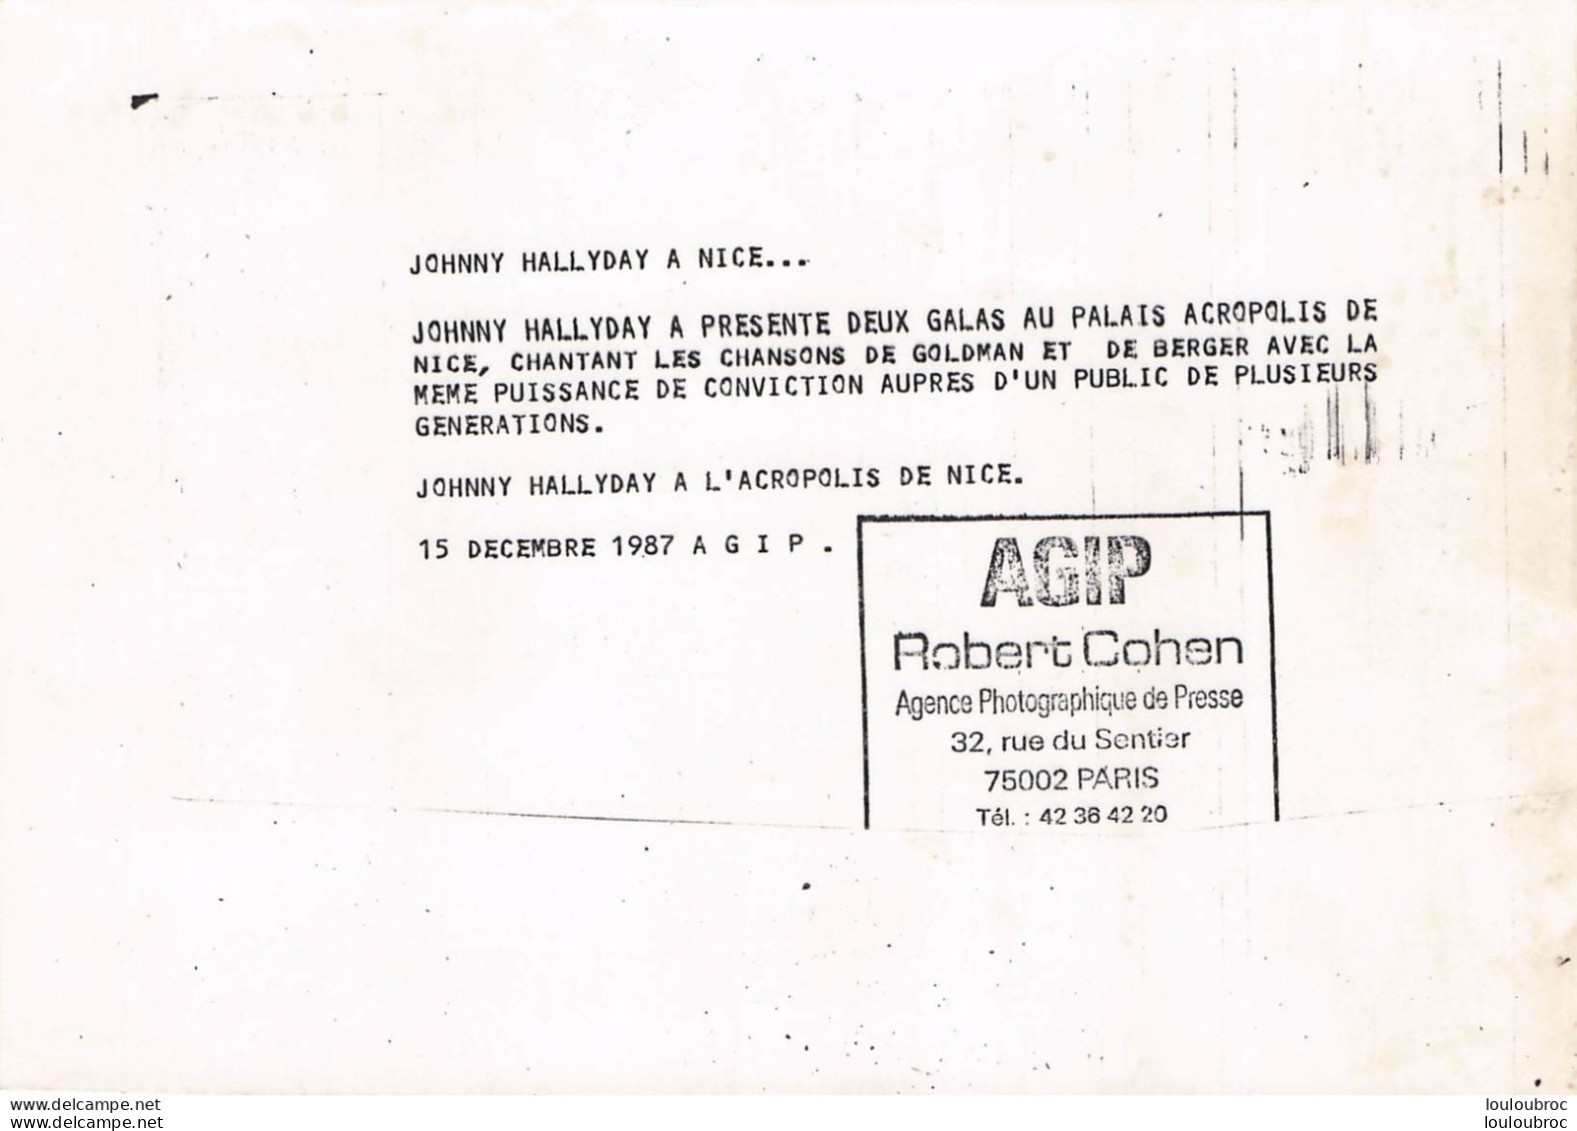 JOHNNY HALLYDAY 1987 A L'ACROPOLIS DE NICE CHANTANT GOLDMAN ET BERGER  PHOTO DE PRESSE ORIGINALE 21X15CM - Beroemde Personen